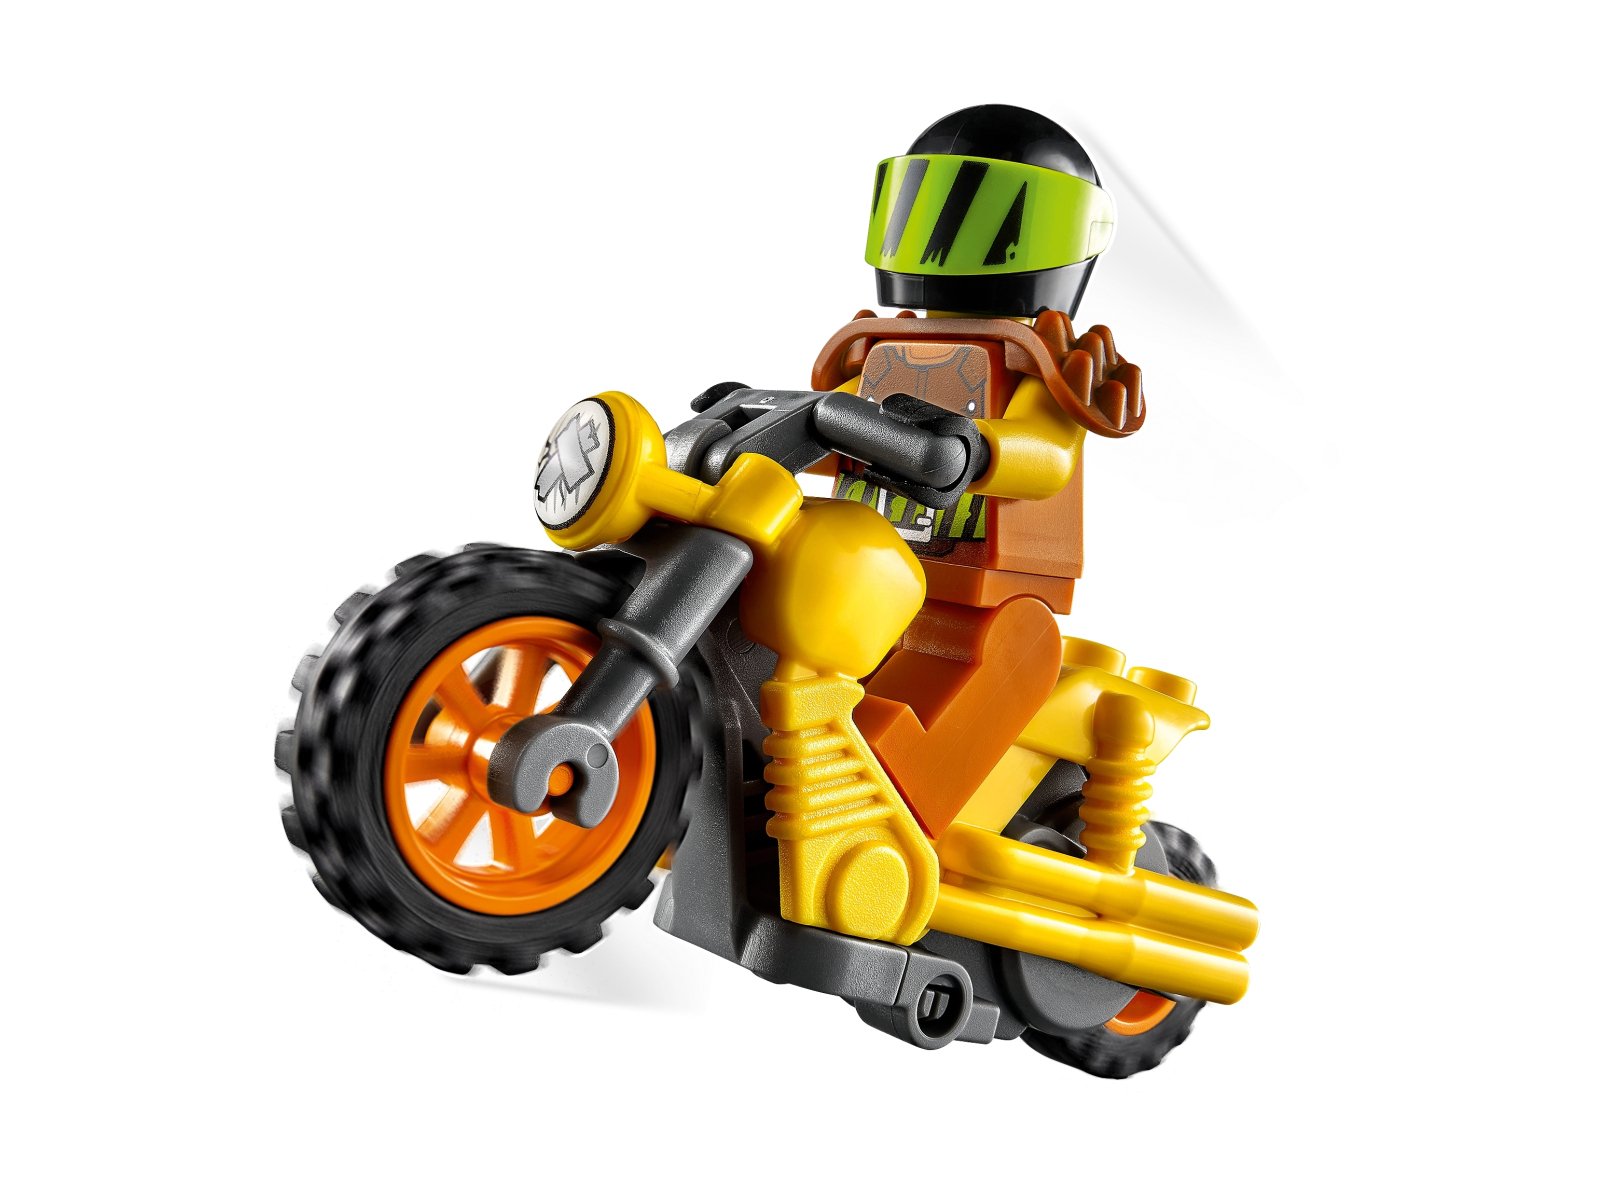 LEGO City Demolka na motocyklu kaskaderskim 60297